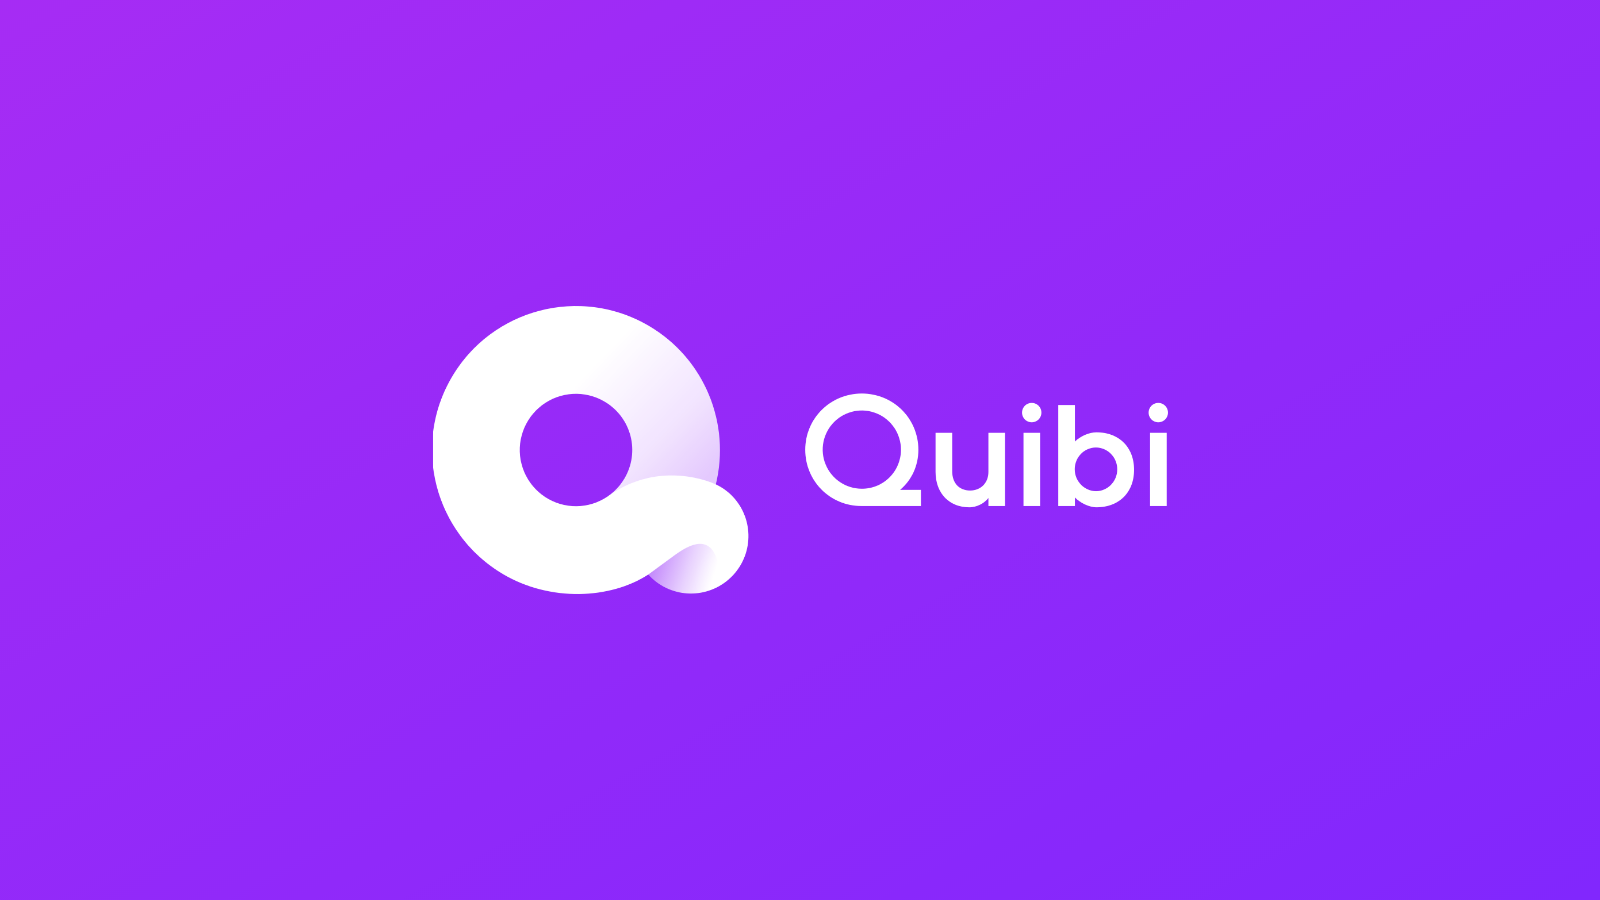 إطلاق خدمة البث الجديدة "Quibi" بإصدار تجريبي مجاني لمدة 90 يومًا 100